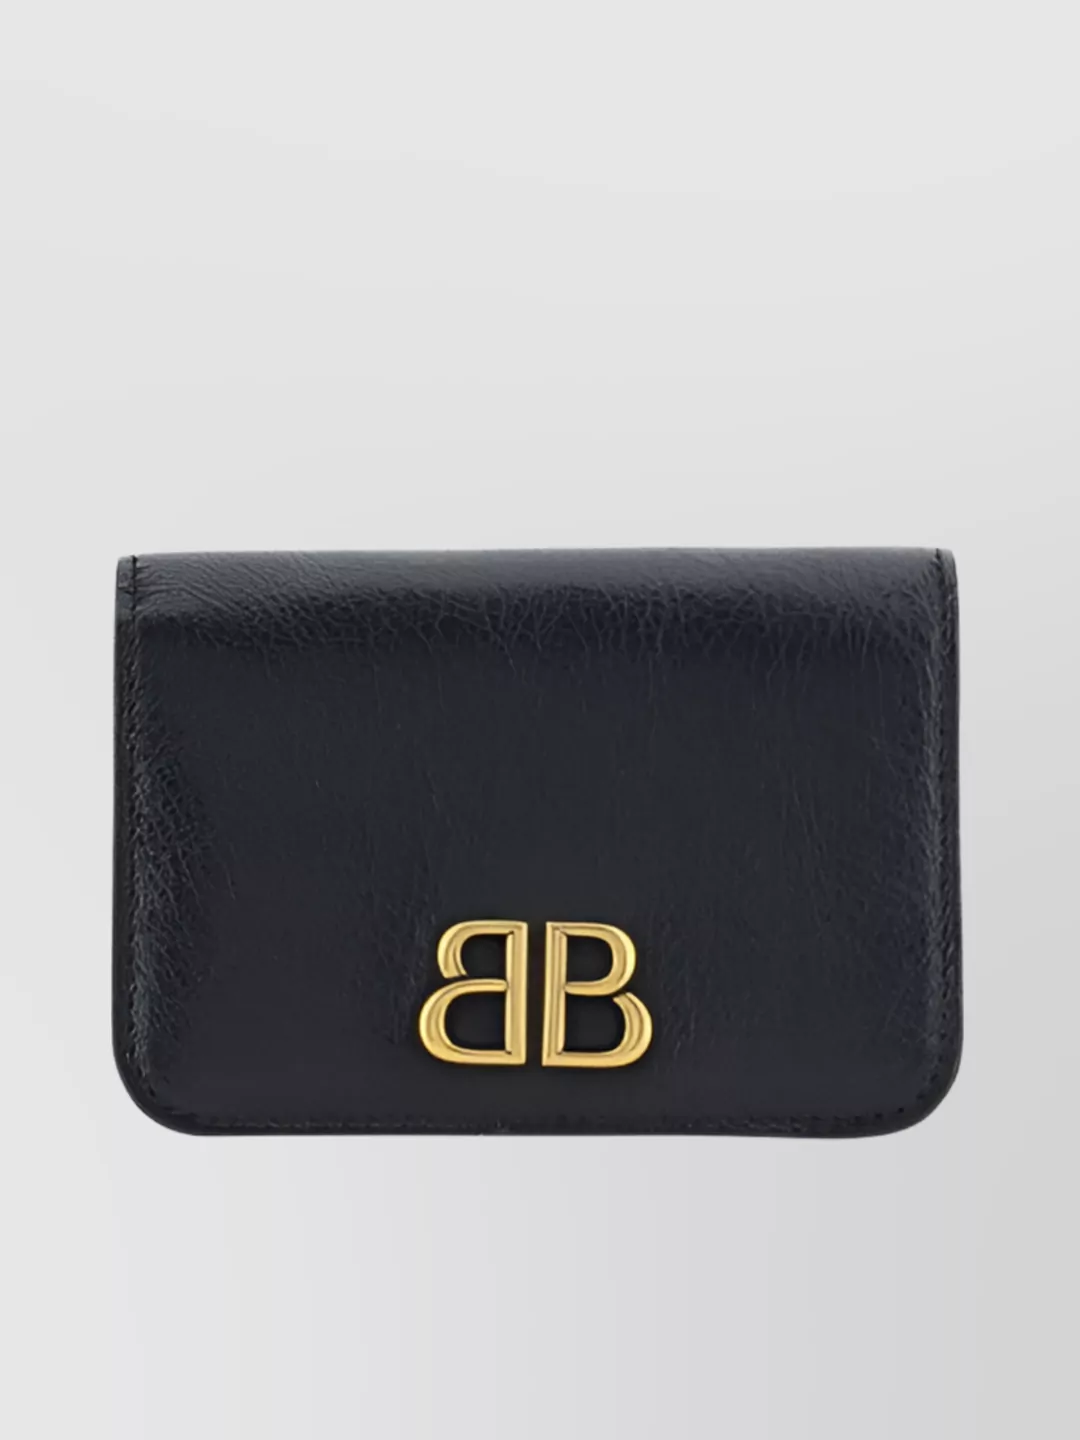 Shop Balenciaga Leather Fold-over Monochrome Purse